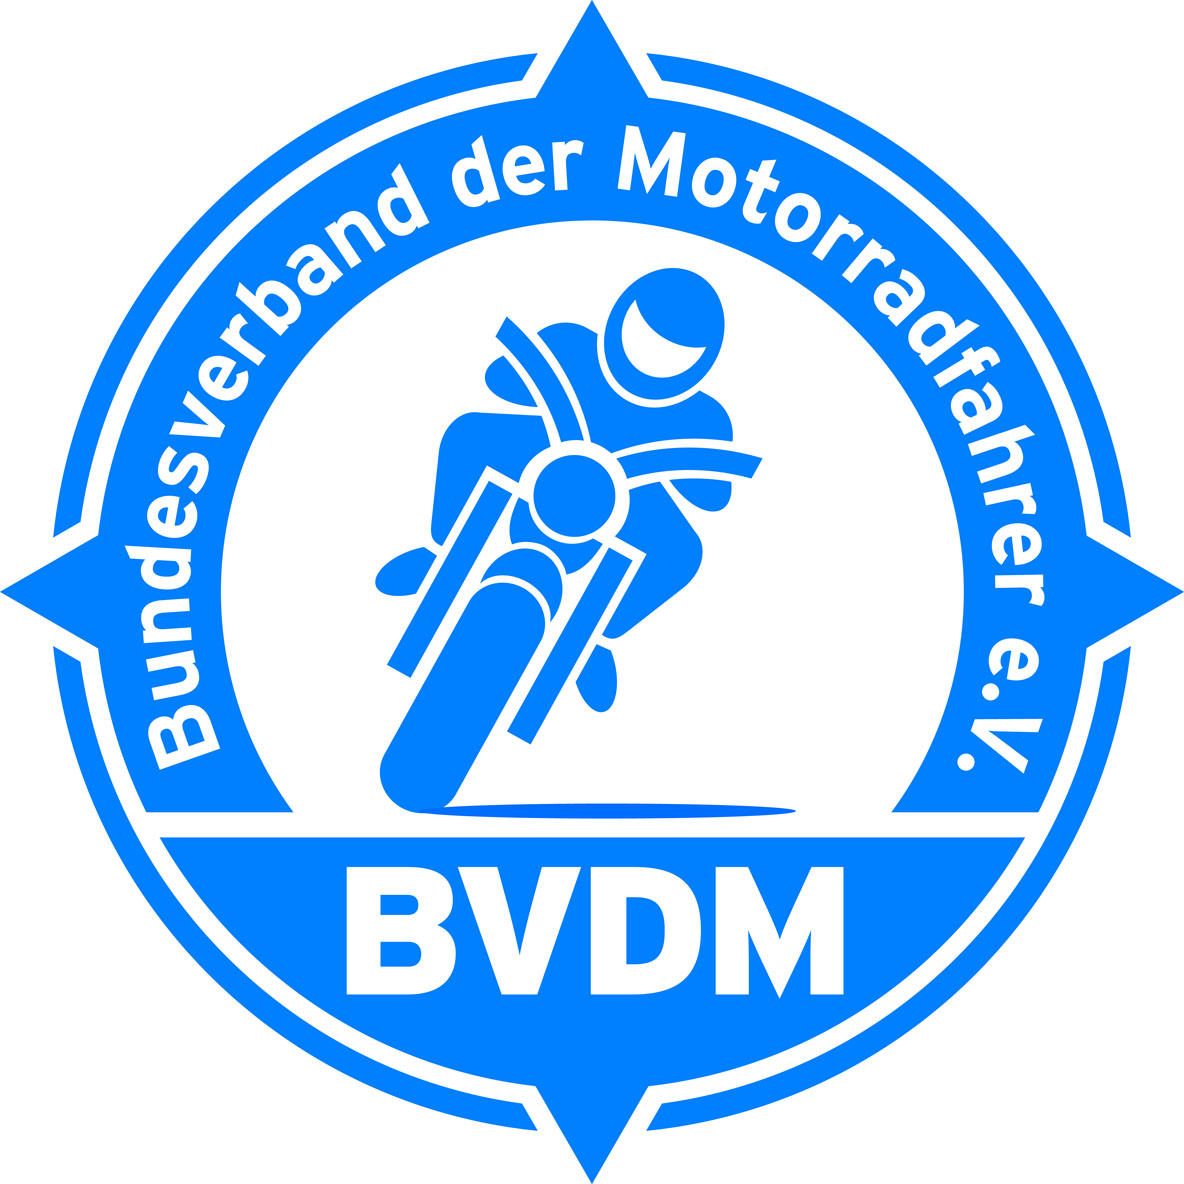 Bundesverband der Motorradfahrer e.V. (BVDM)